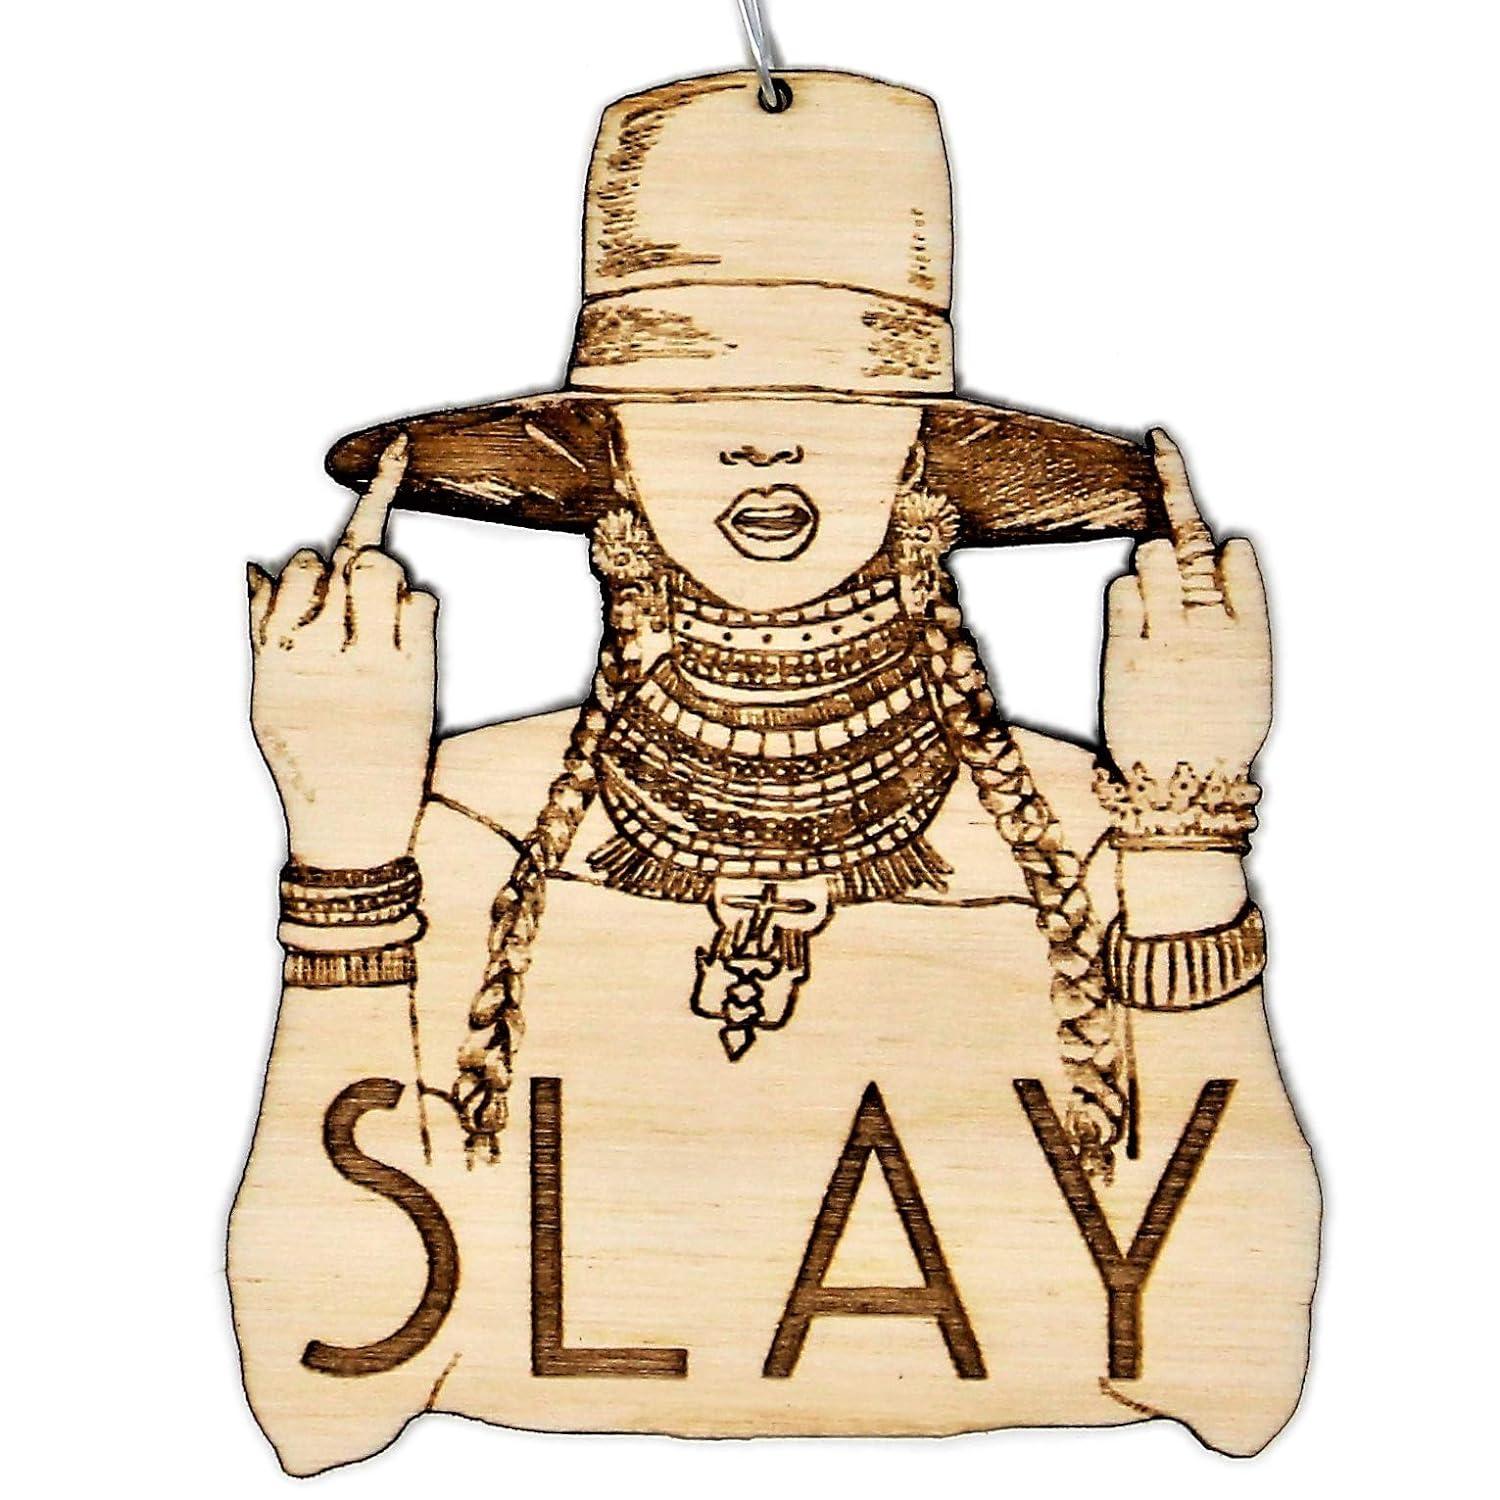 Ein Ornament einer Silhouette von Beyoncé mit dem Wort „Slay“